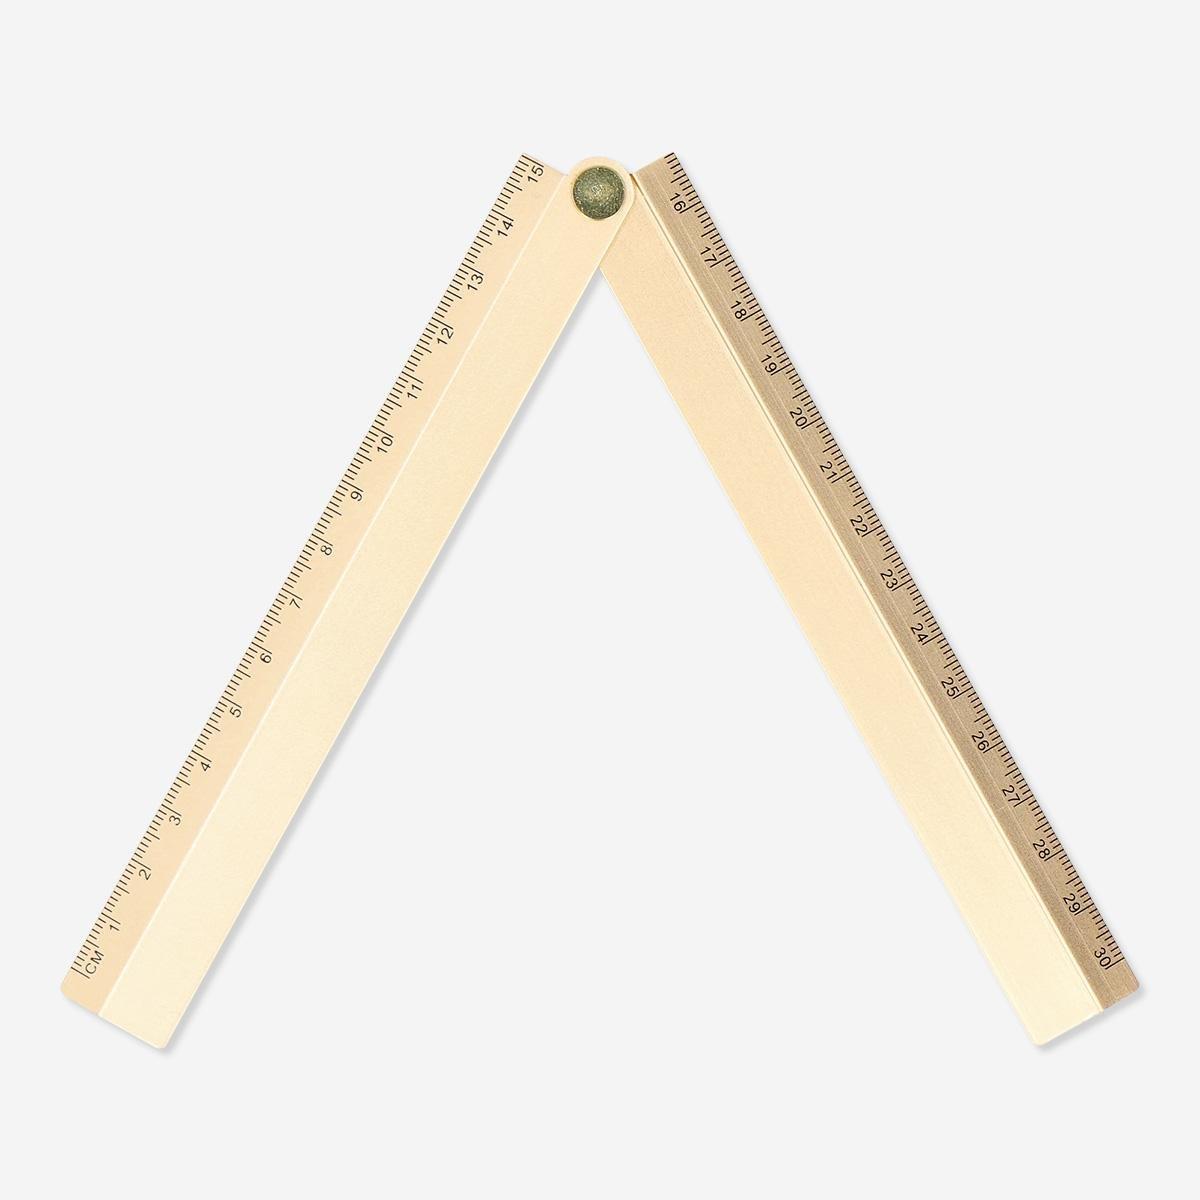 Metal ruler. foldable